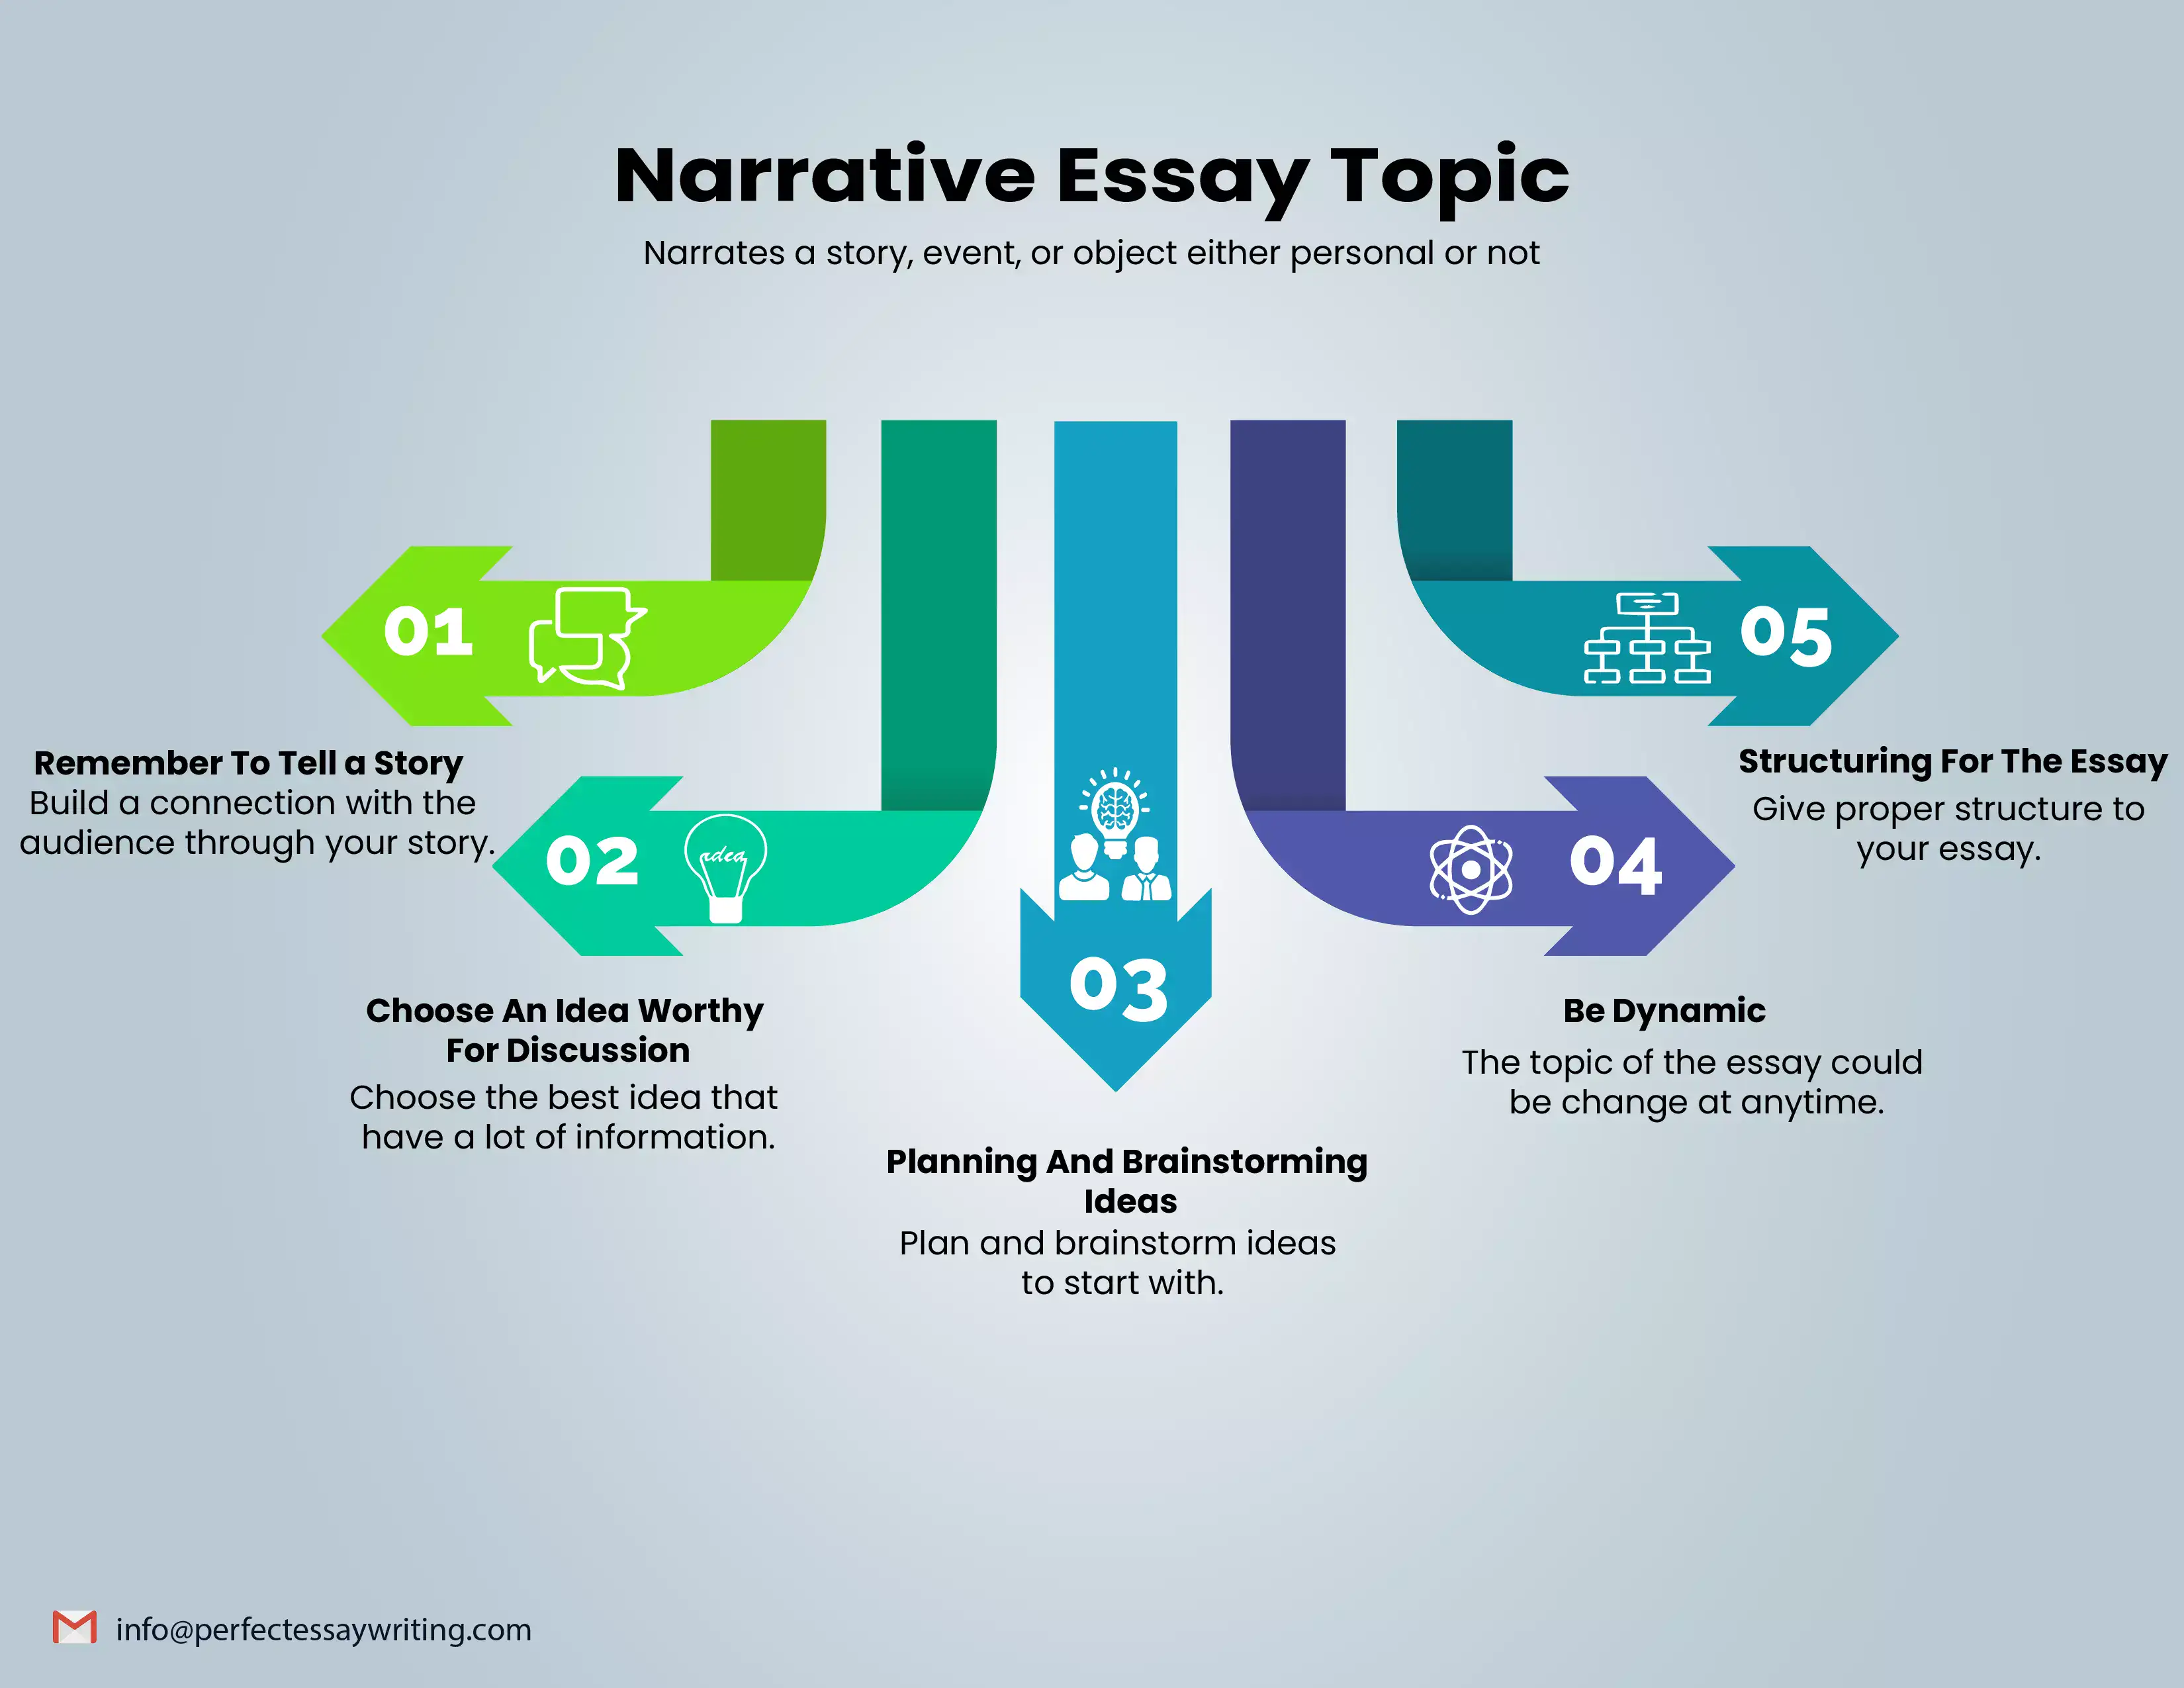 what is a narrative essay topics